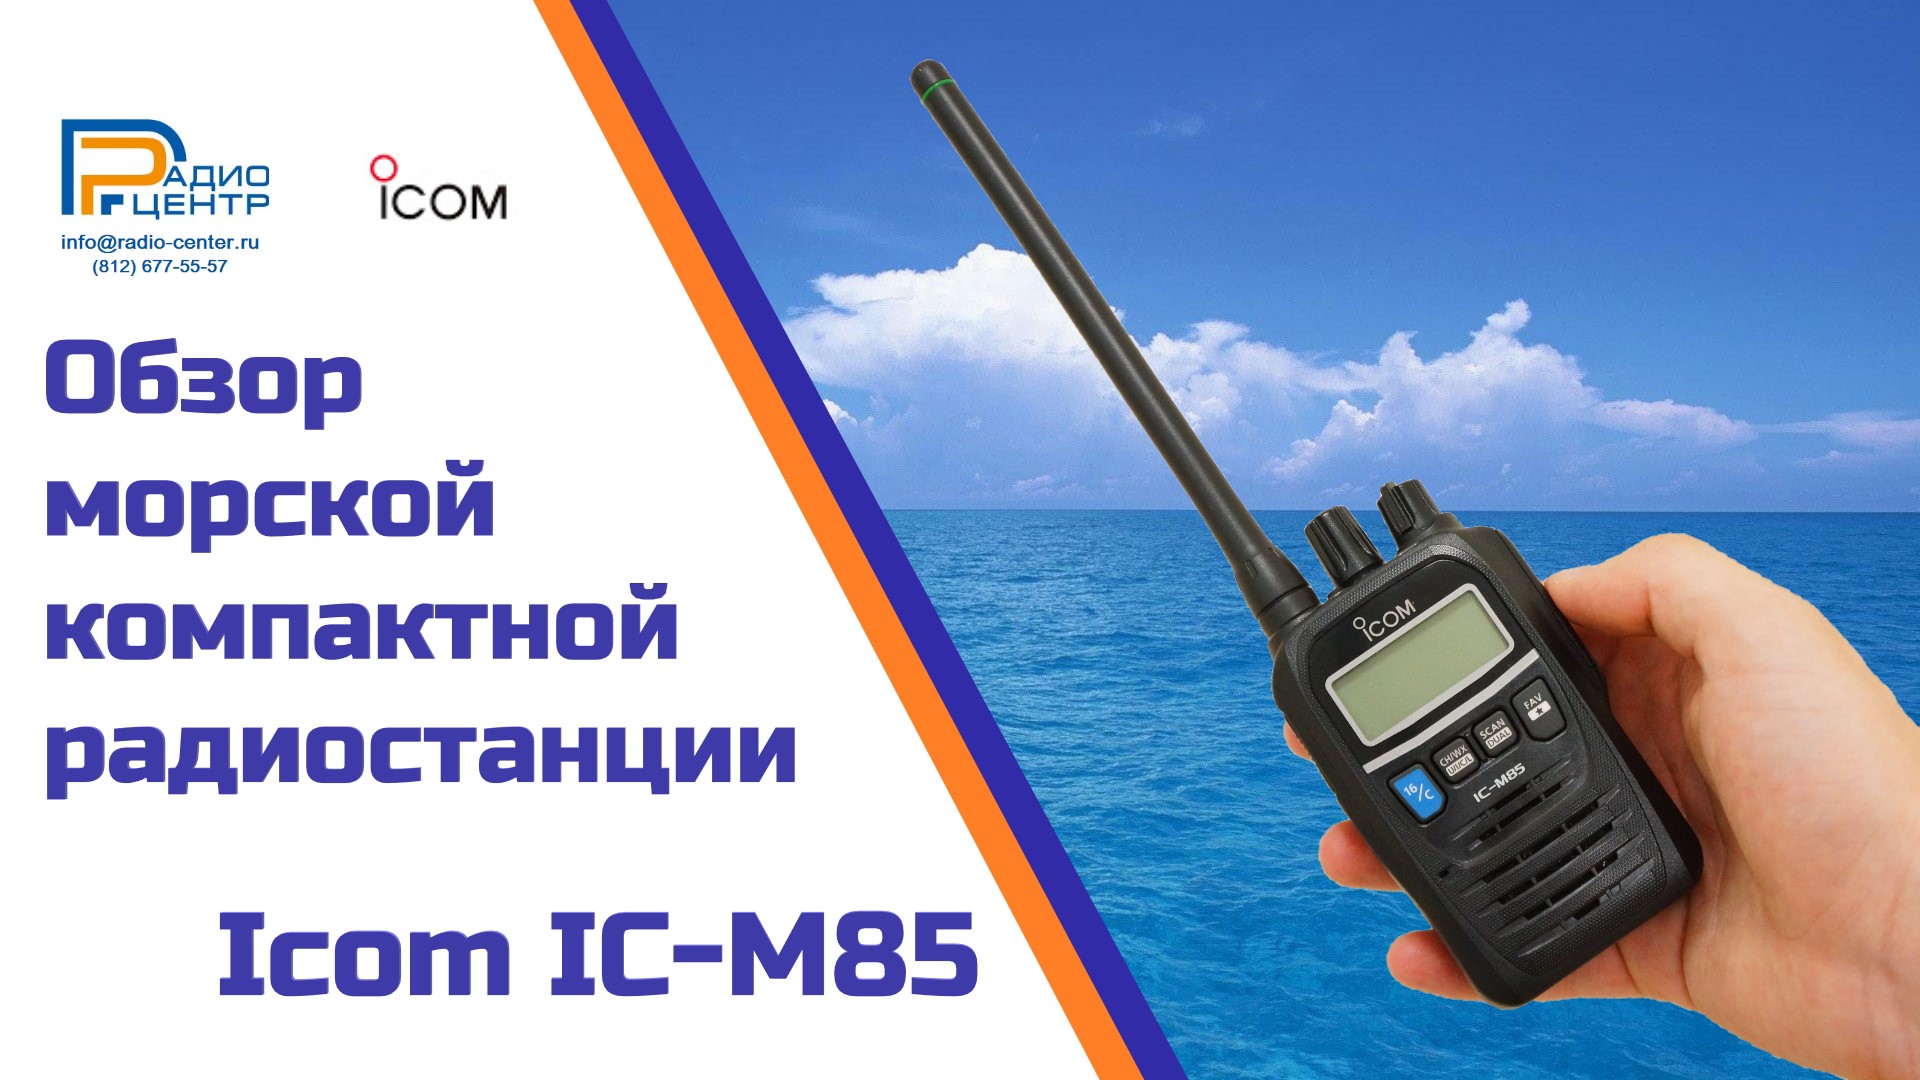 Icom IC-M85 - обзор морской компактной носимой радиостанции | Радиоцентр